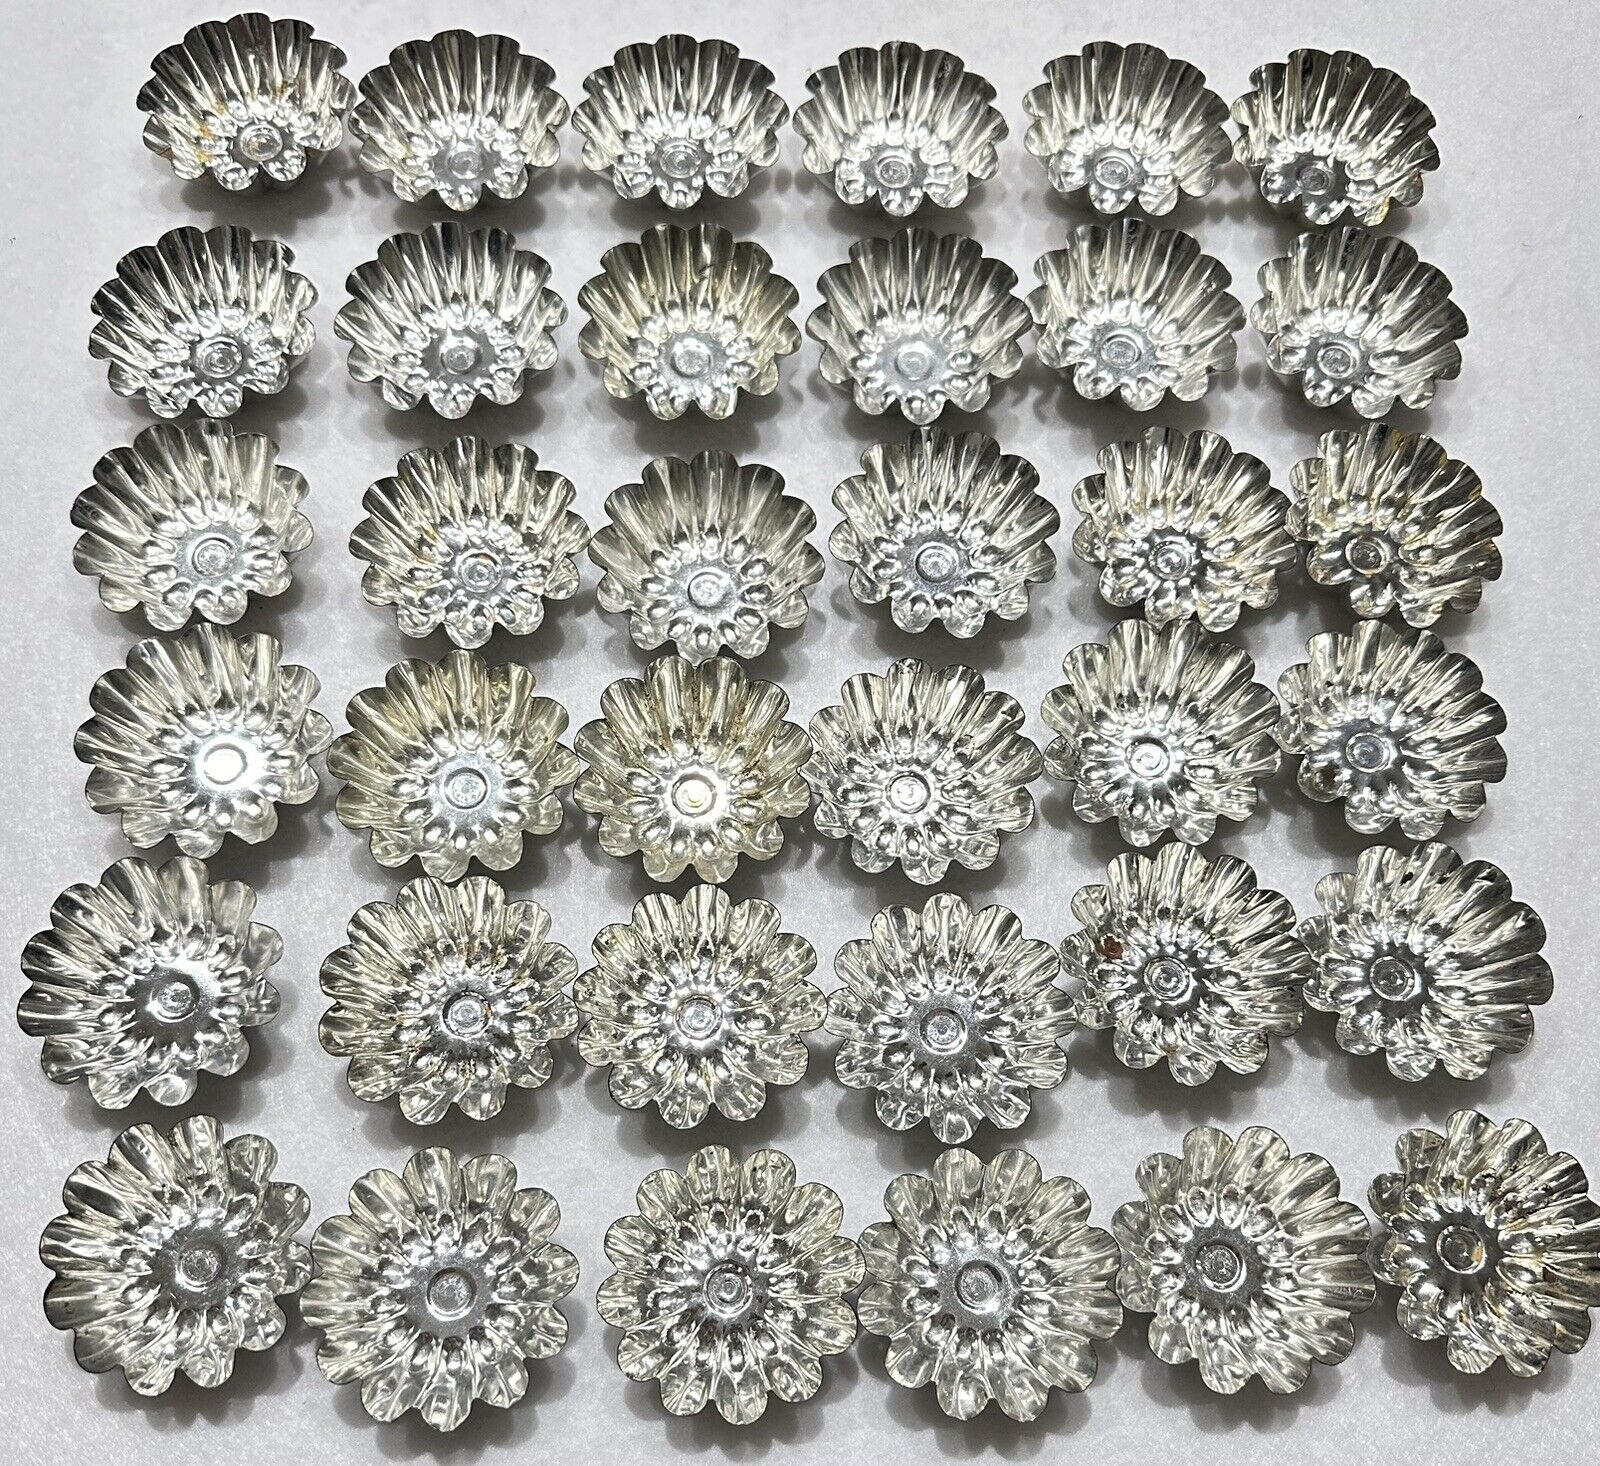 Lot of 36 Mini Tartlet Tart Tins Molds Fluted Vintage All Stamped “Sweden” 2.25”